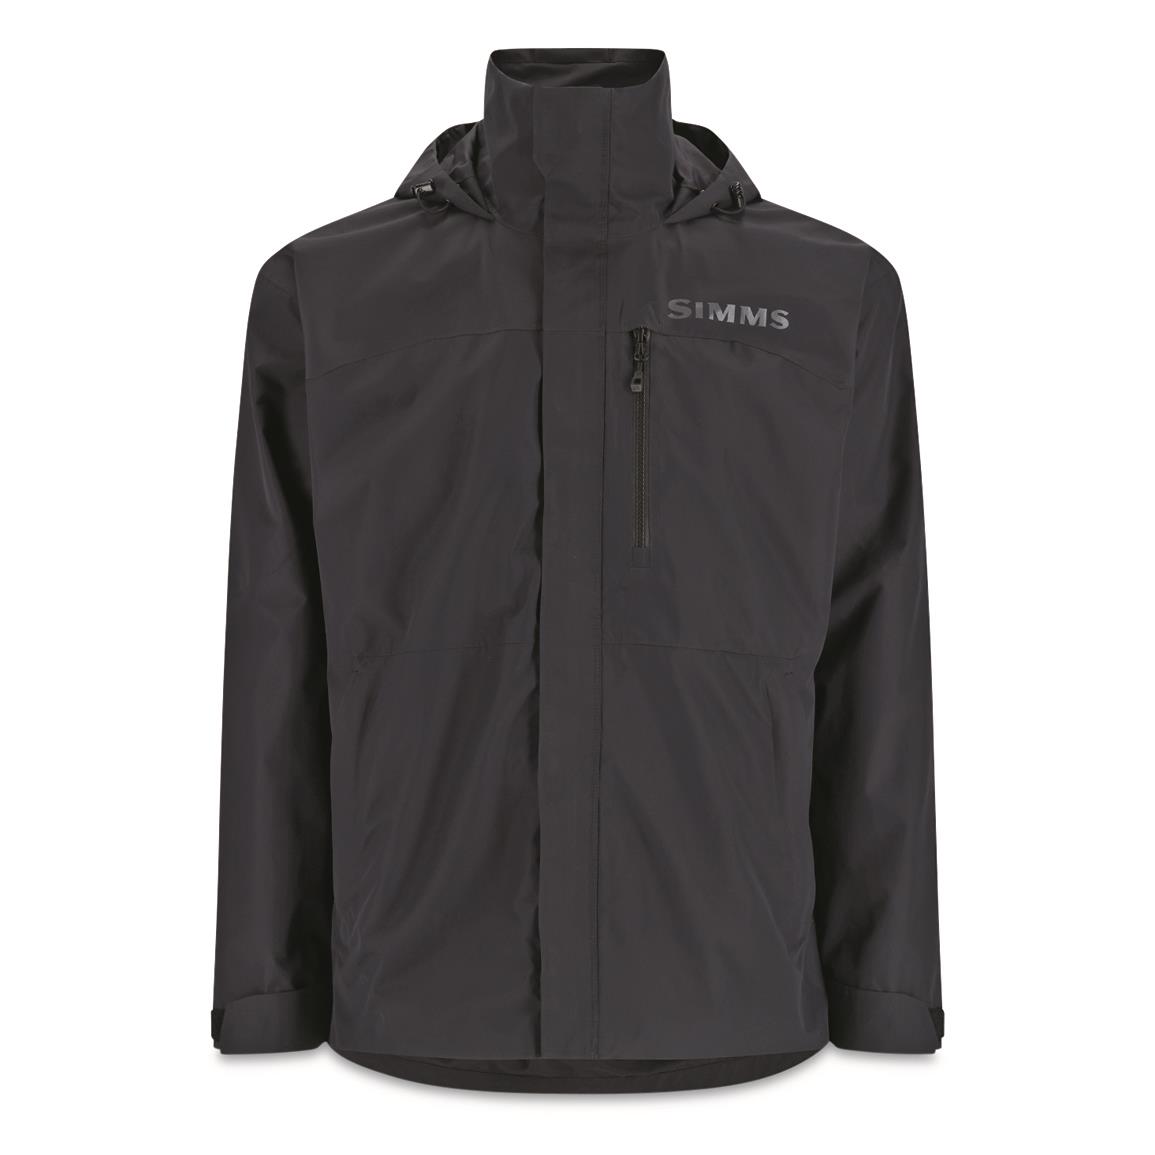 Rapala Rain Jacket - 731623, Jackets, Coats & Rain Gear at